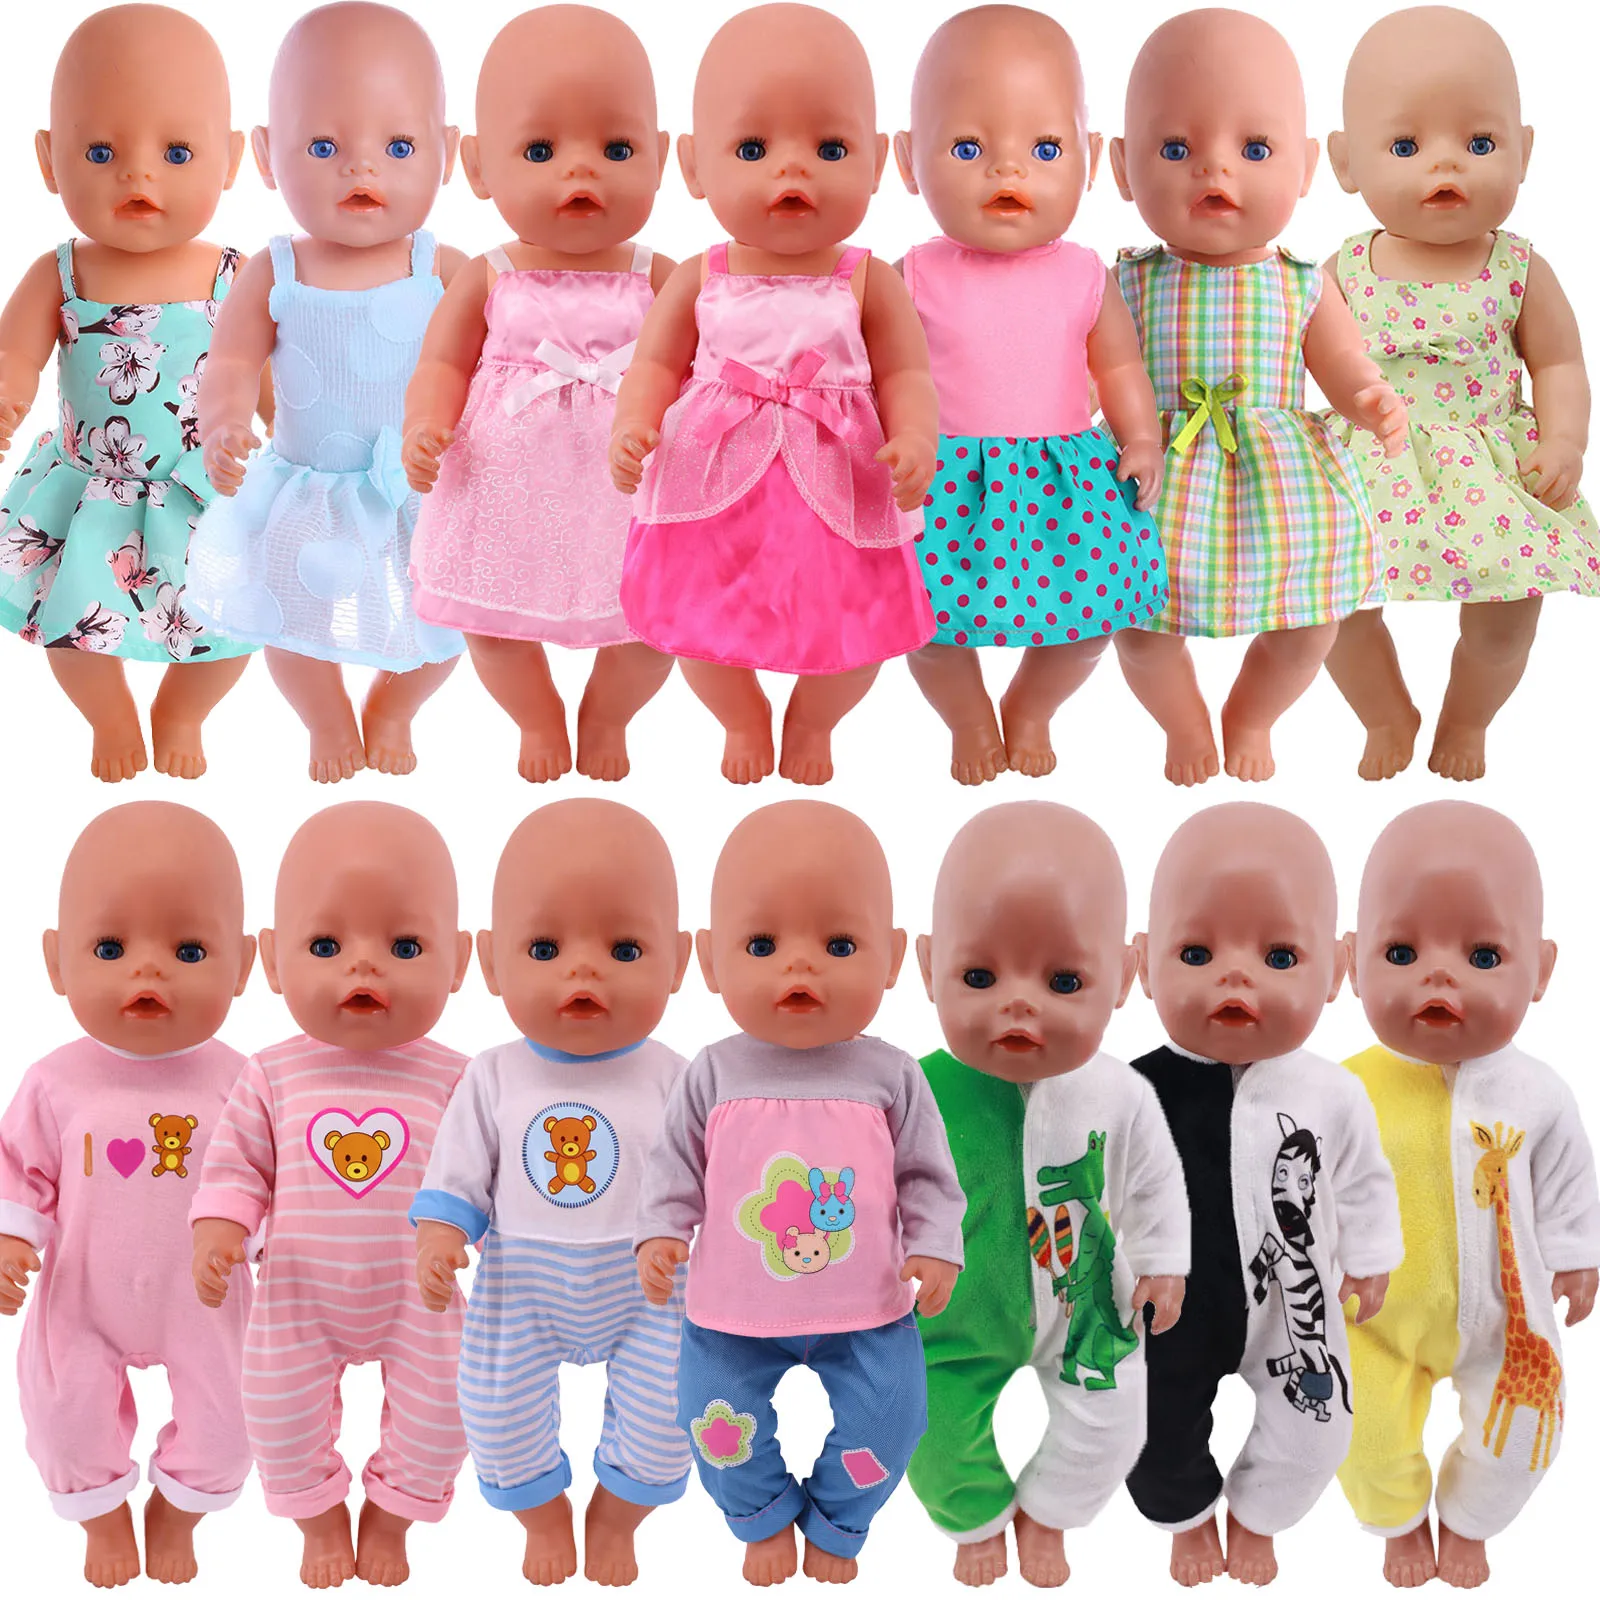 Кукольная одежда, платье, юбка, мультяшный кролик, раньше, для 18-дюймовых американских девушек и 43 см кукол новорожденных, Куклы нашего поколения трендовая одежда для куклы милые подтяжки подходит для 18 дюймовых американских кукол и 43 см аксессуары для одежды новорожденных игрушки